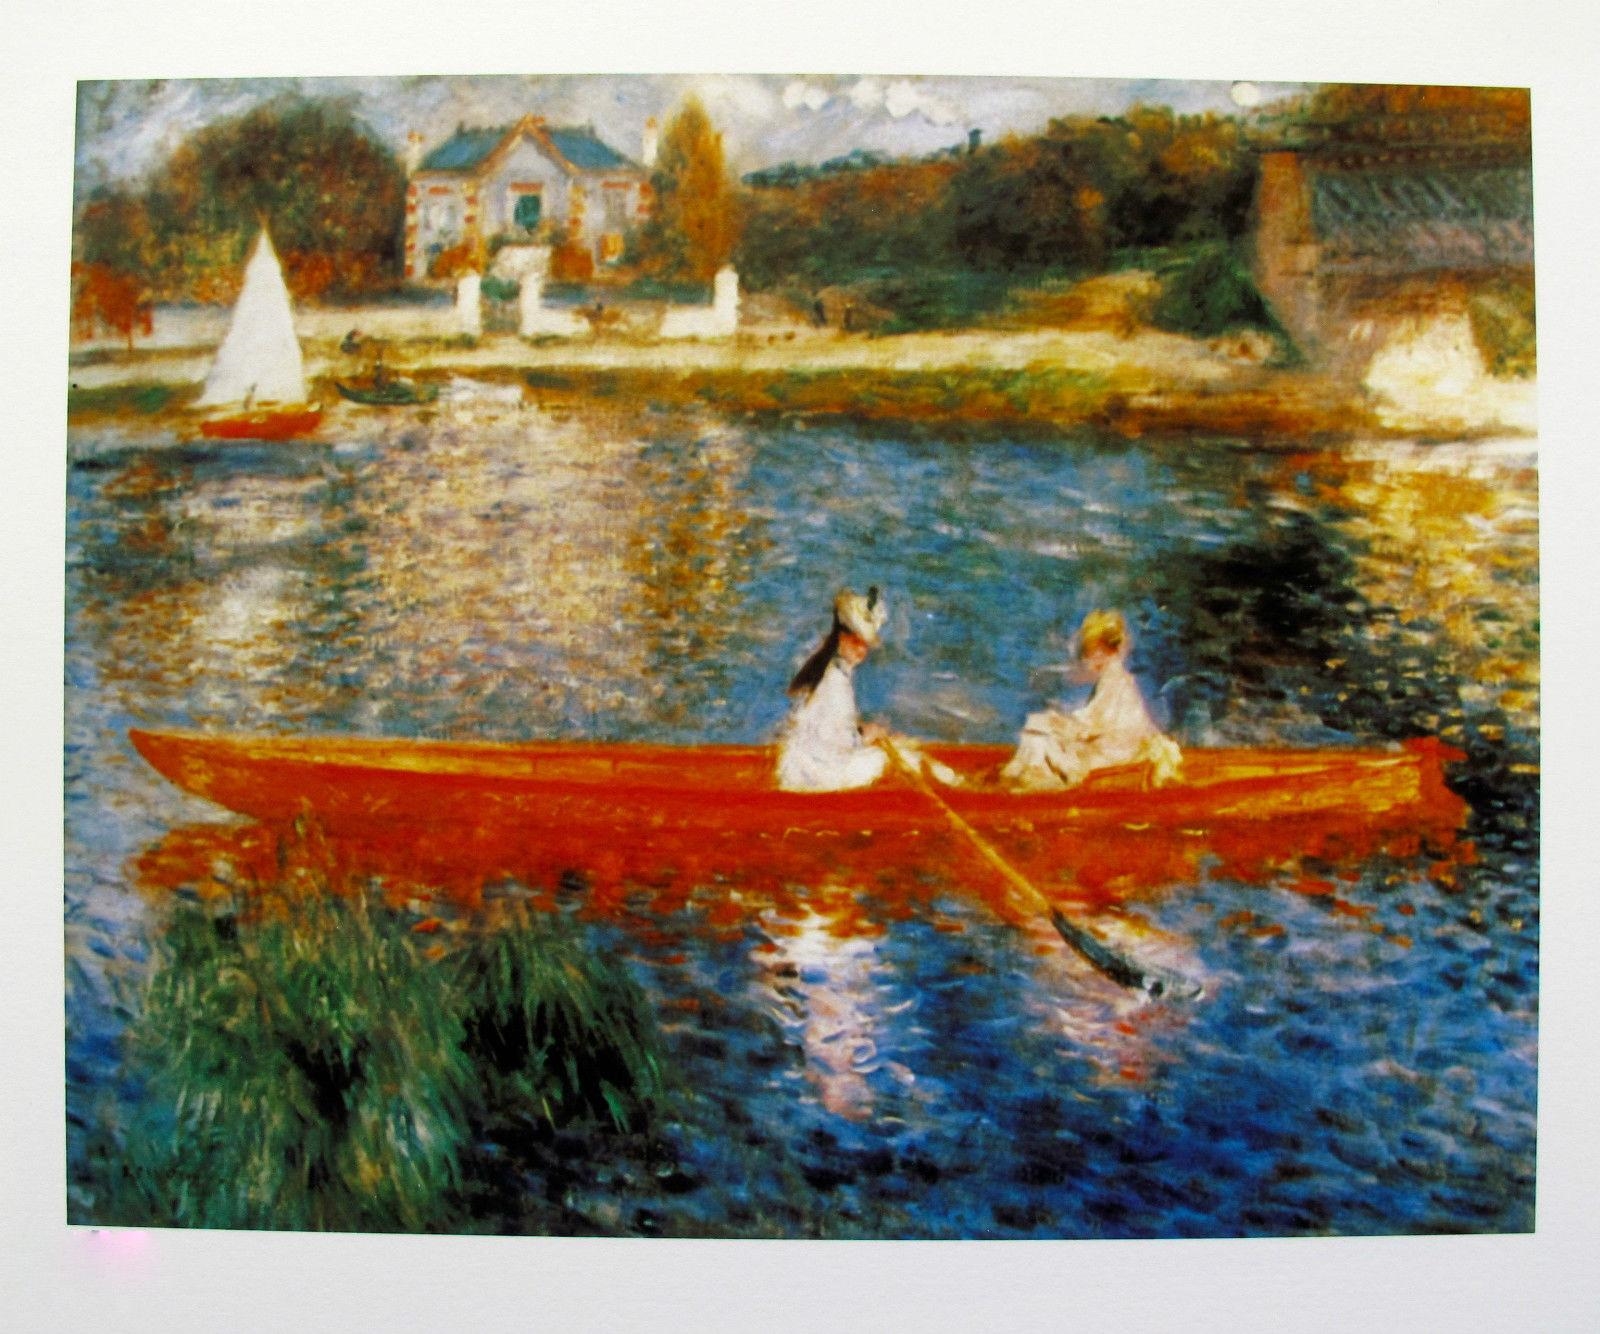 THE SKIFF - Pierre-Auguste Renoir